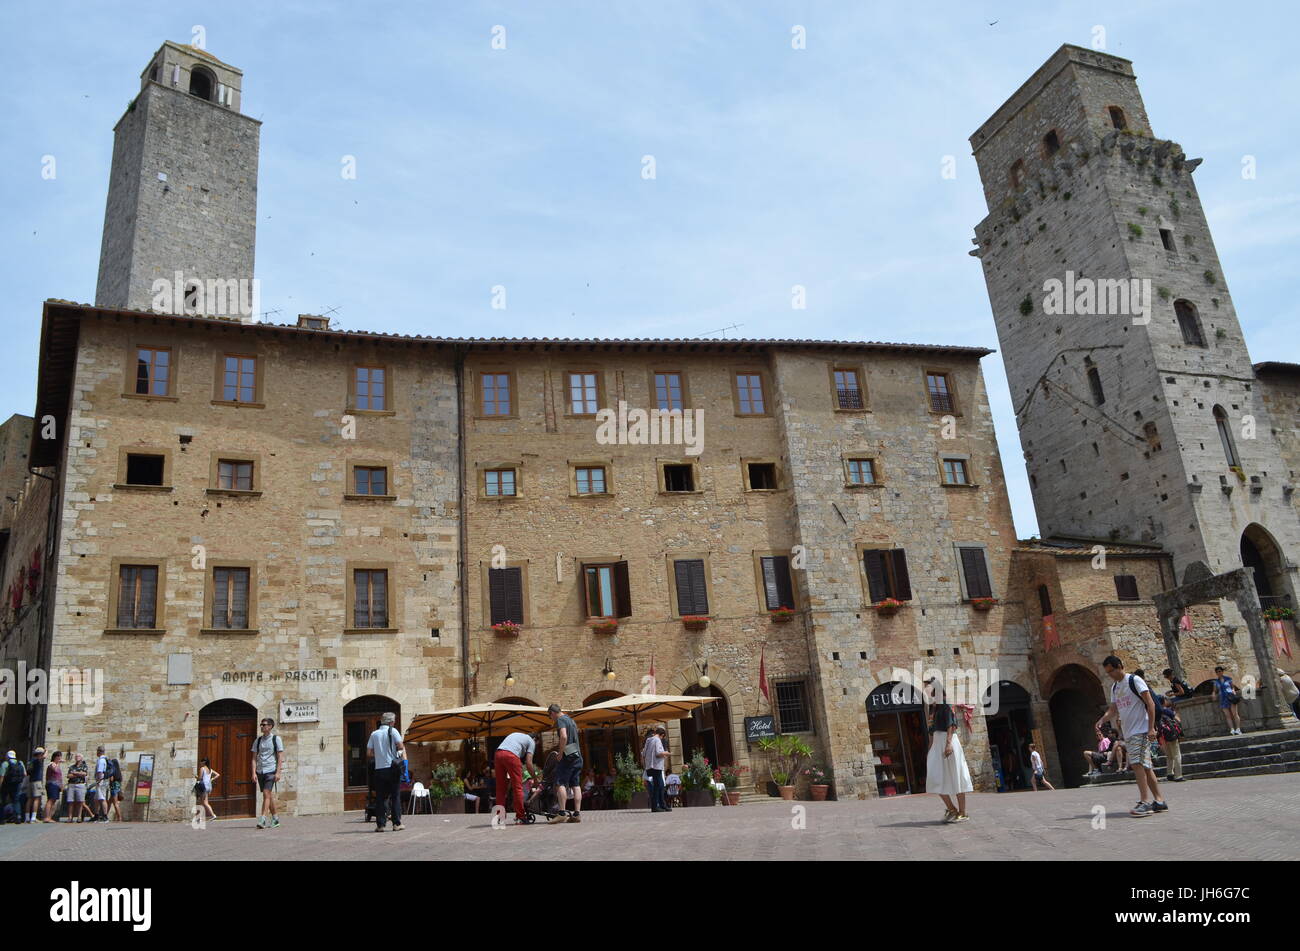 San Gimignano, Toscana, Italia, piazza della cisterna,centro storico,ivthc., borgo etrusco. torri quadrate di cui vi erano 13. Foto Stock